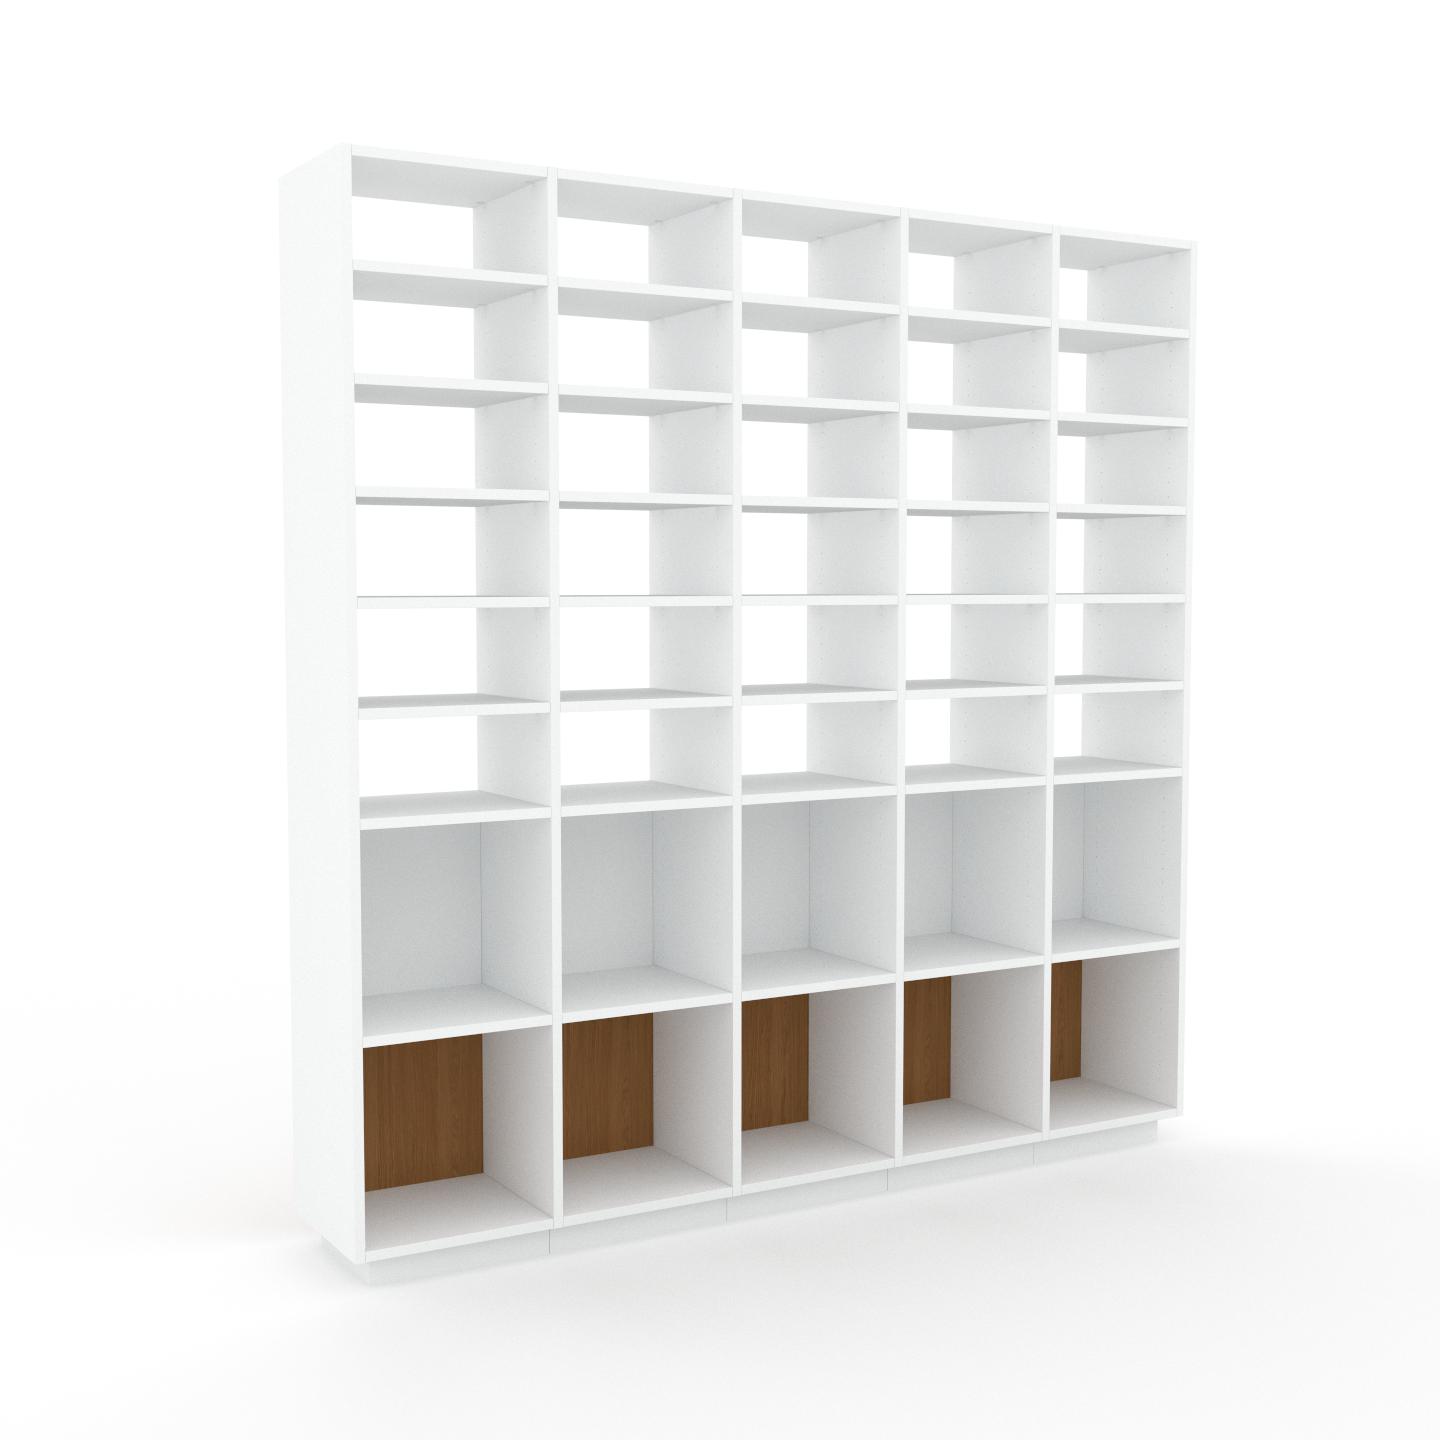 MYCS Bibliotheksregal Weiß - Individuelles Regal für Bibliothek: Einzigartiges Design - 195 x 200 x 35 cm, konfigurierbar